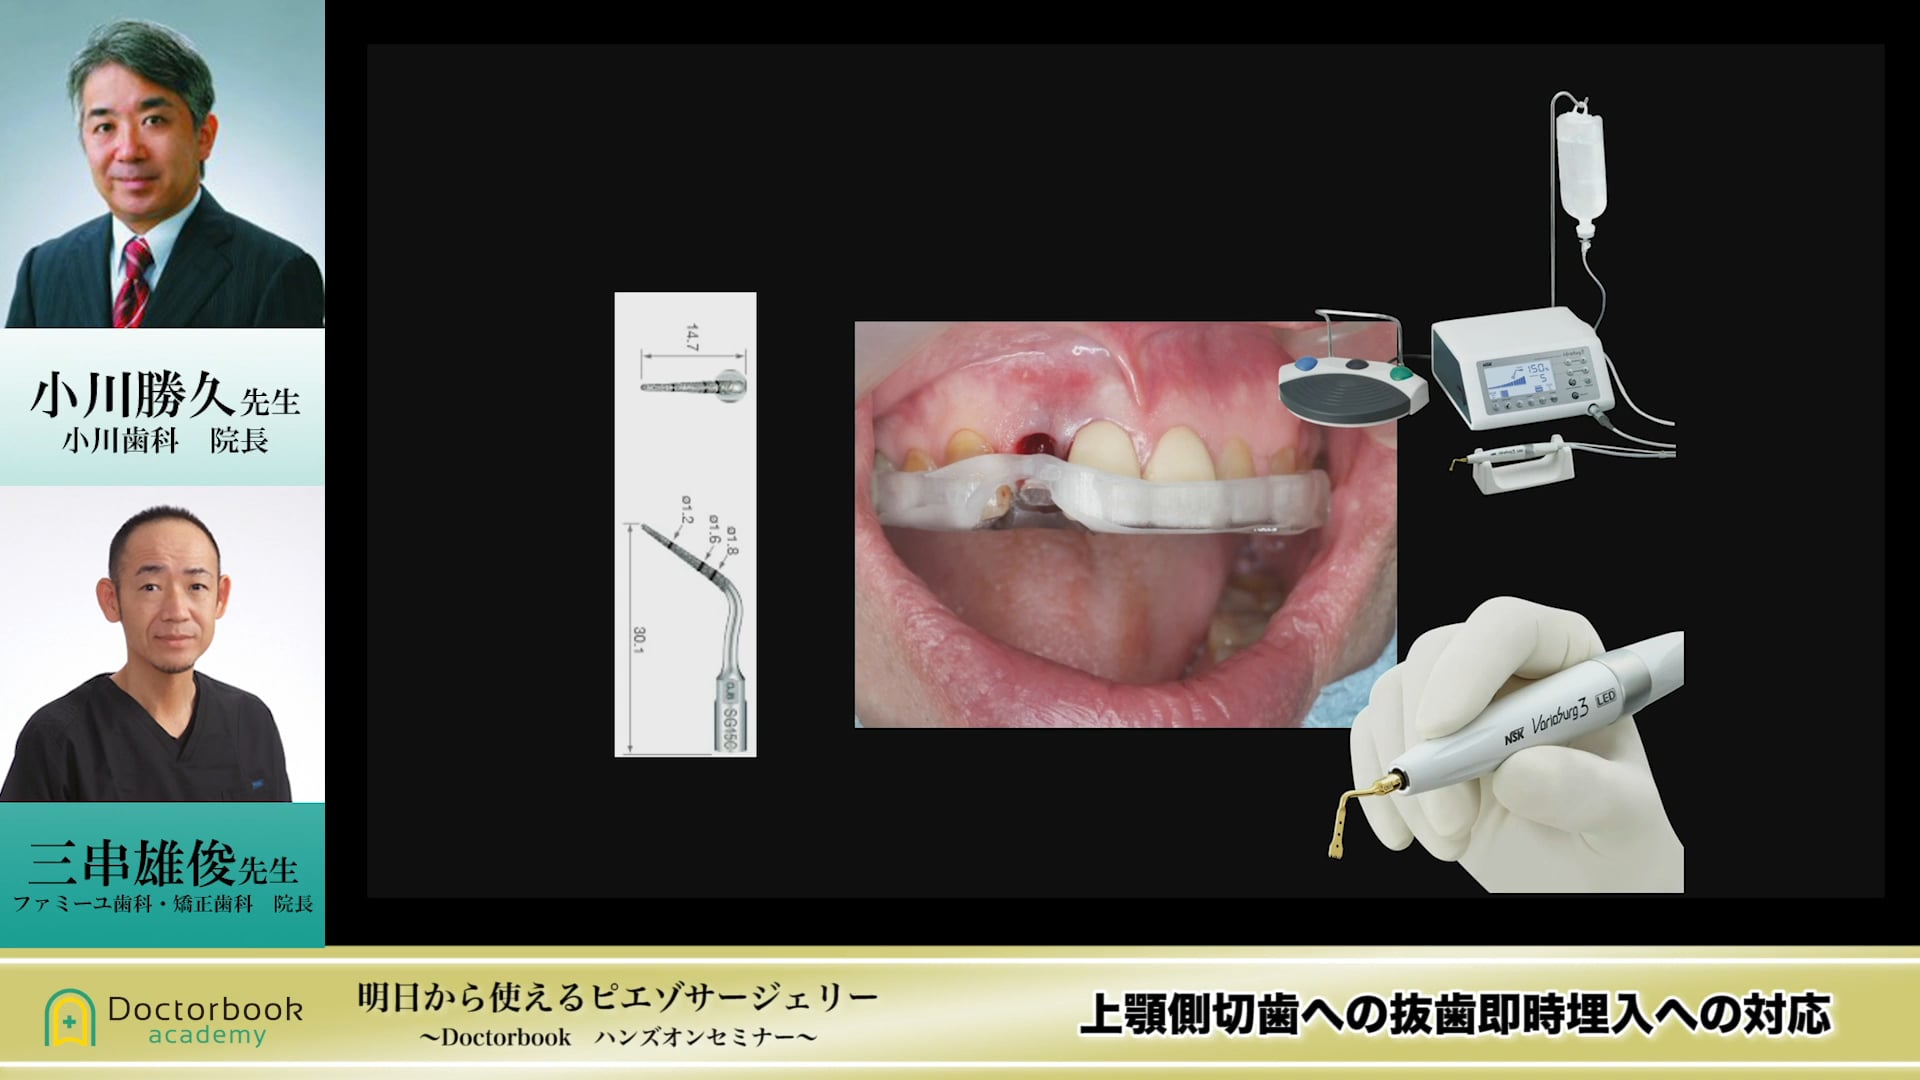 上顎側切歯への抜歯即時埋入への対応 #2